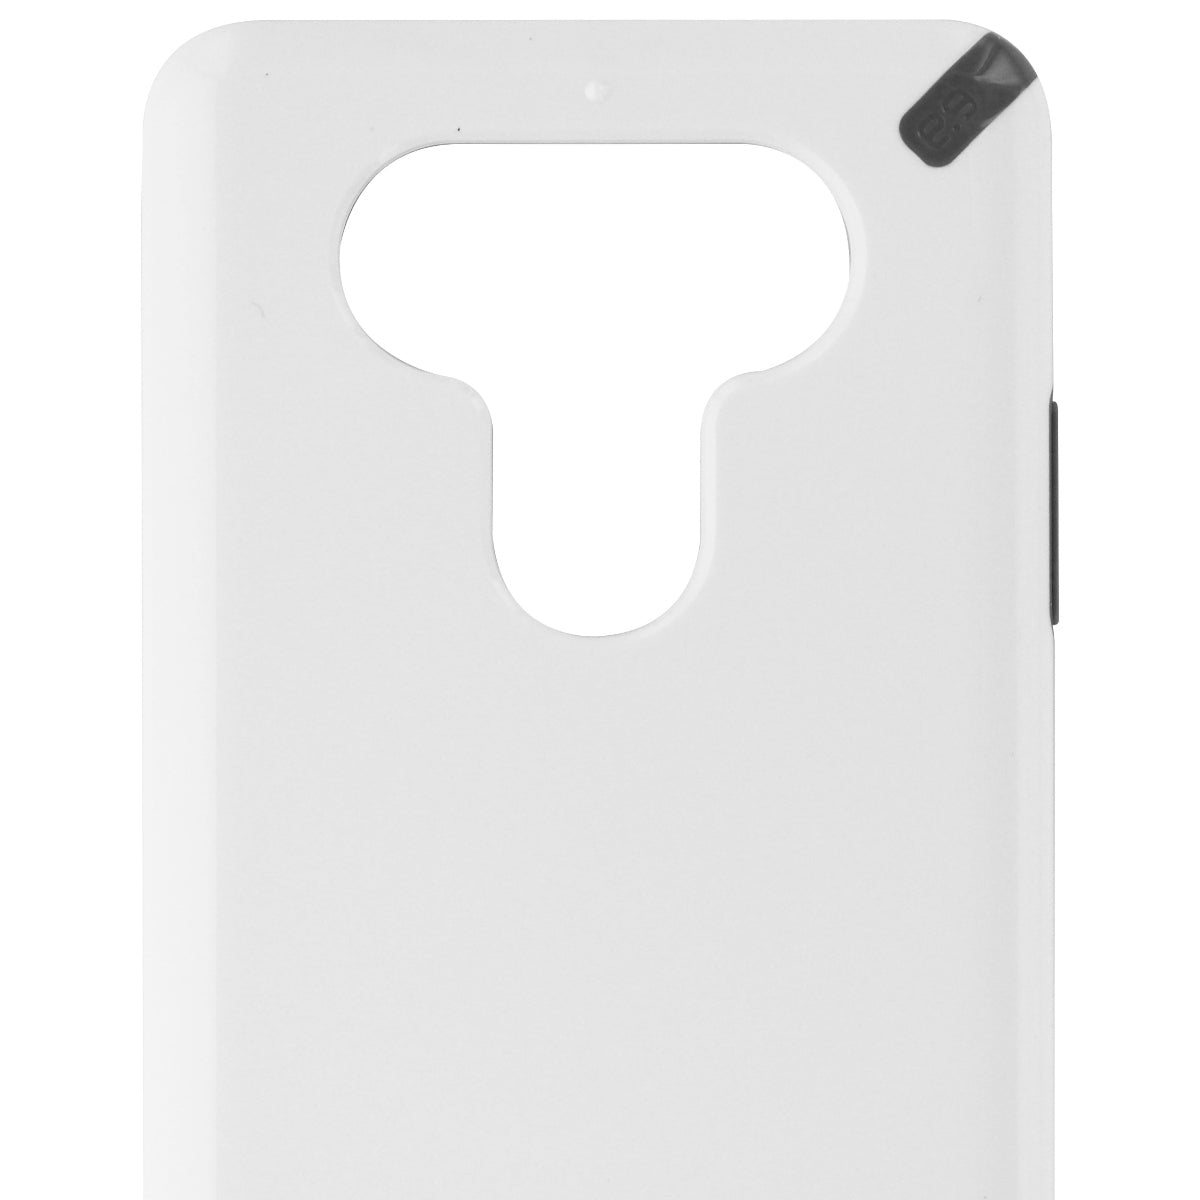 PureGear Slim Shell Series Hardshell Case Cover for LG V20 - White/Gray Cell Phone - Cases, Covers & Skins PureGear    - Simple Cell Bulk Wholesale Pricing - USA Seller